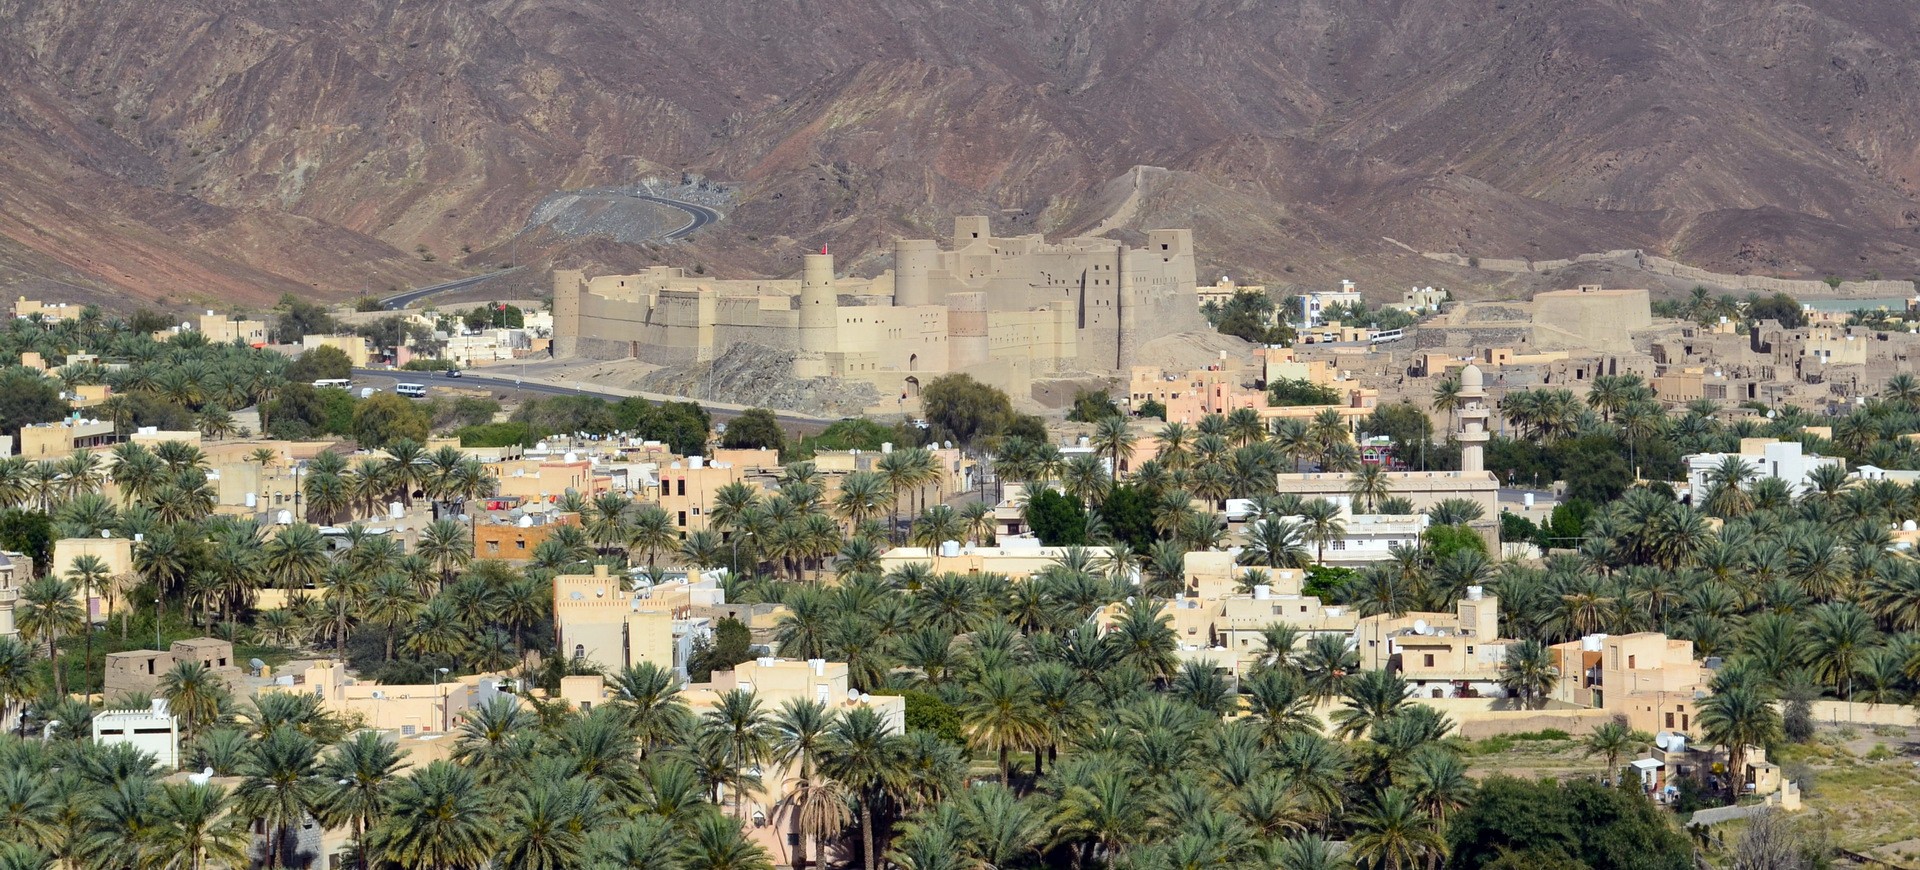 Oman Paysages du Djebel Akhdar